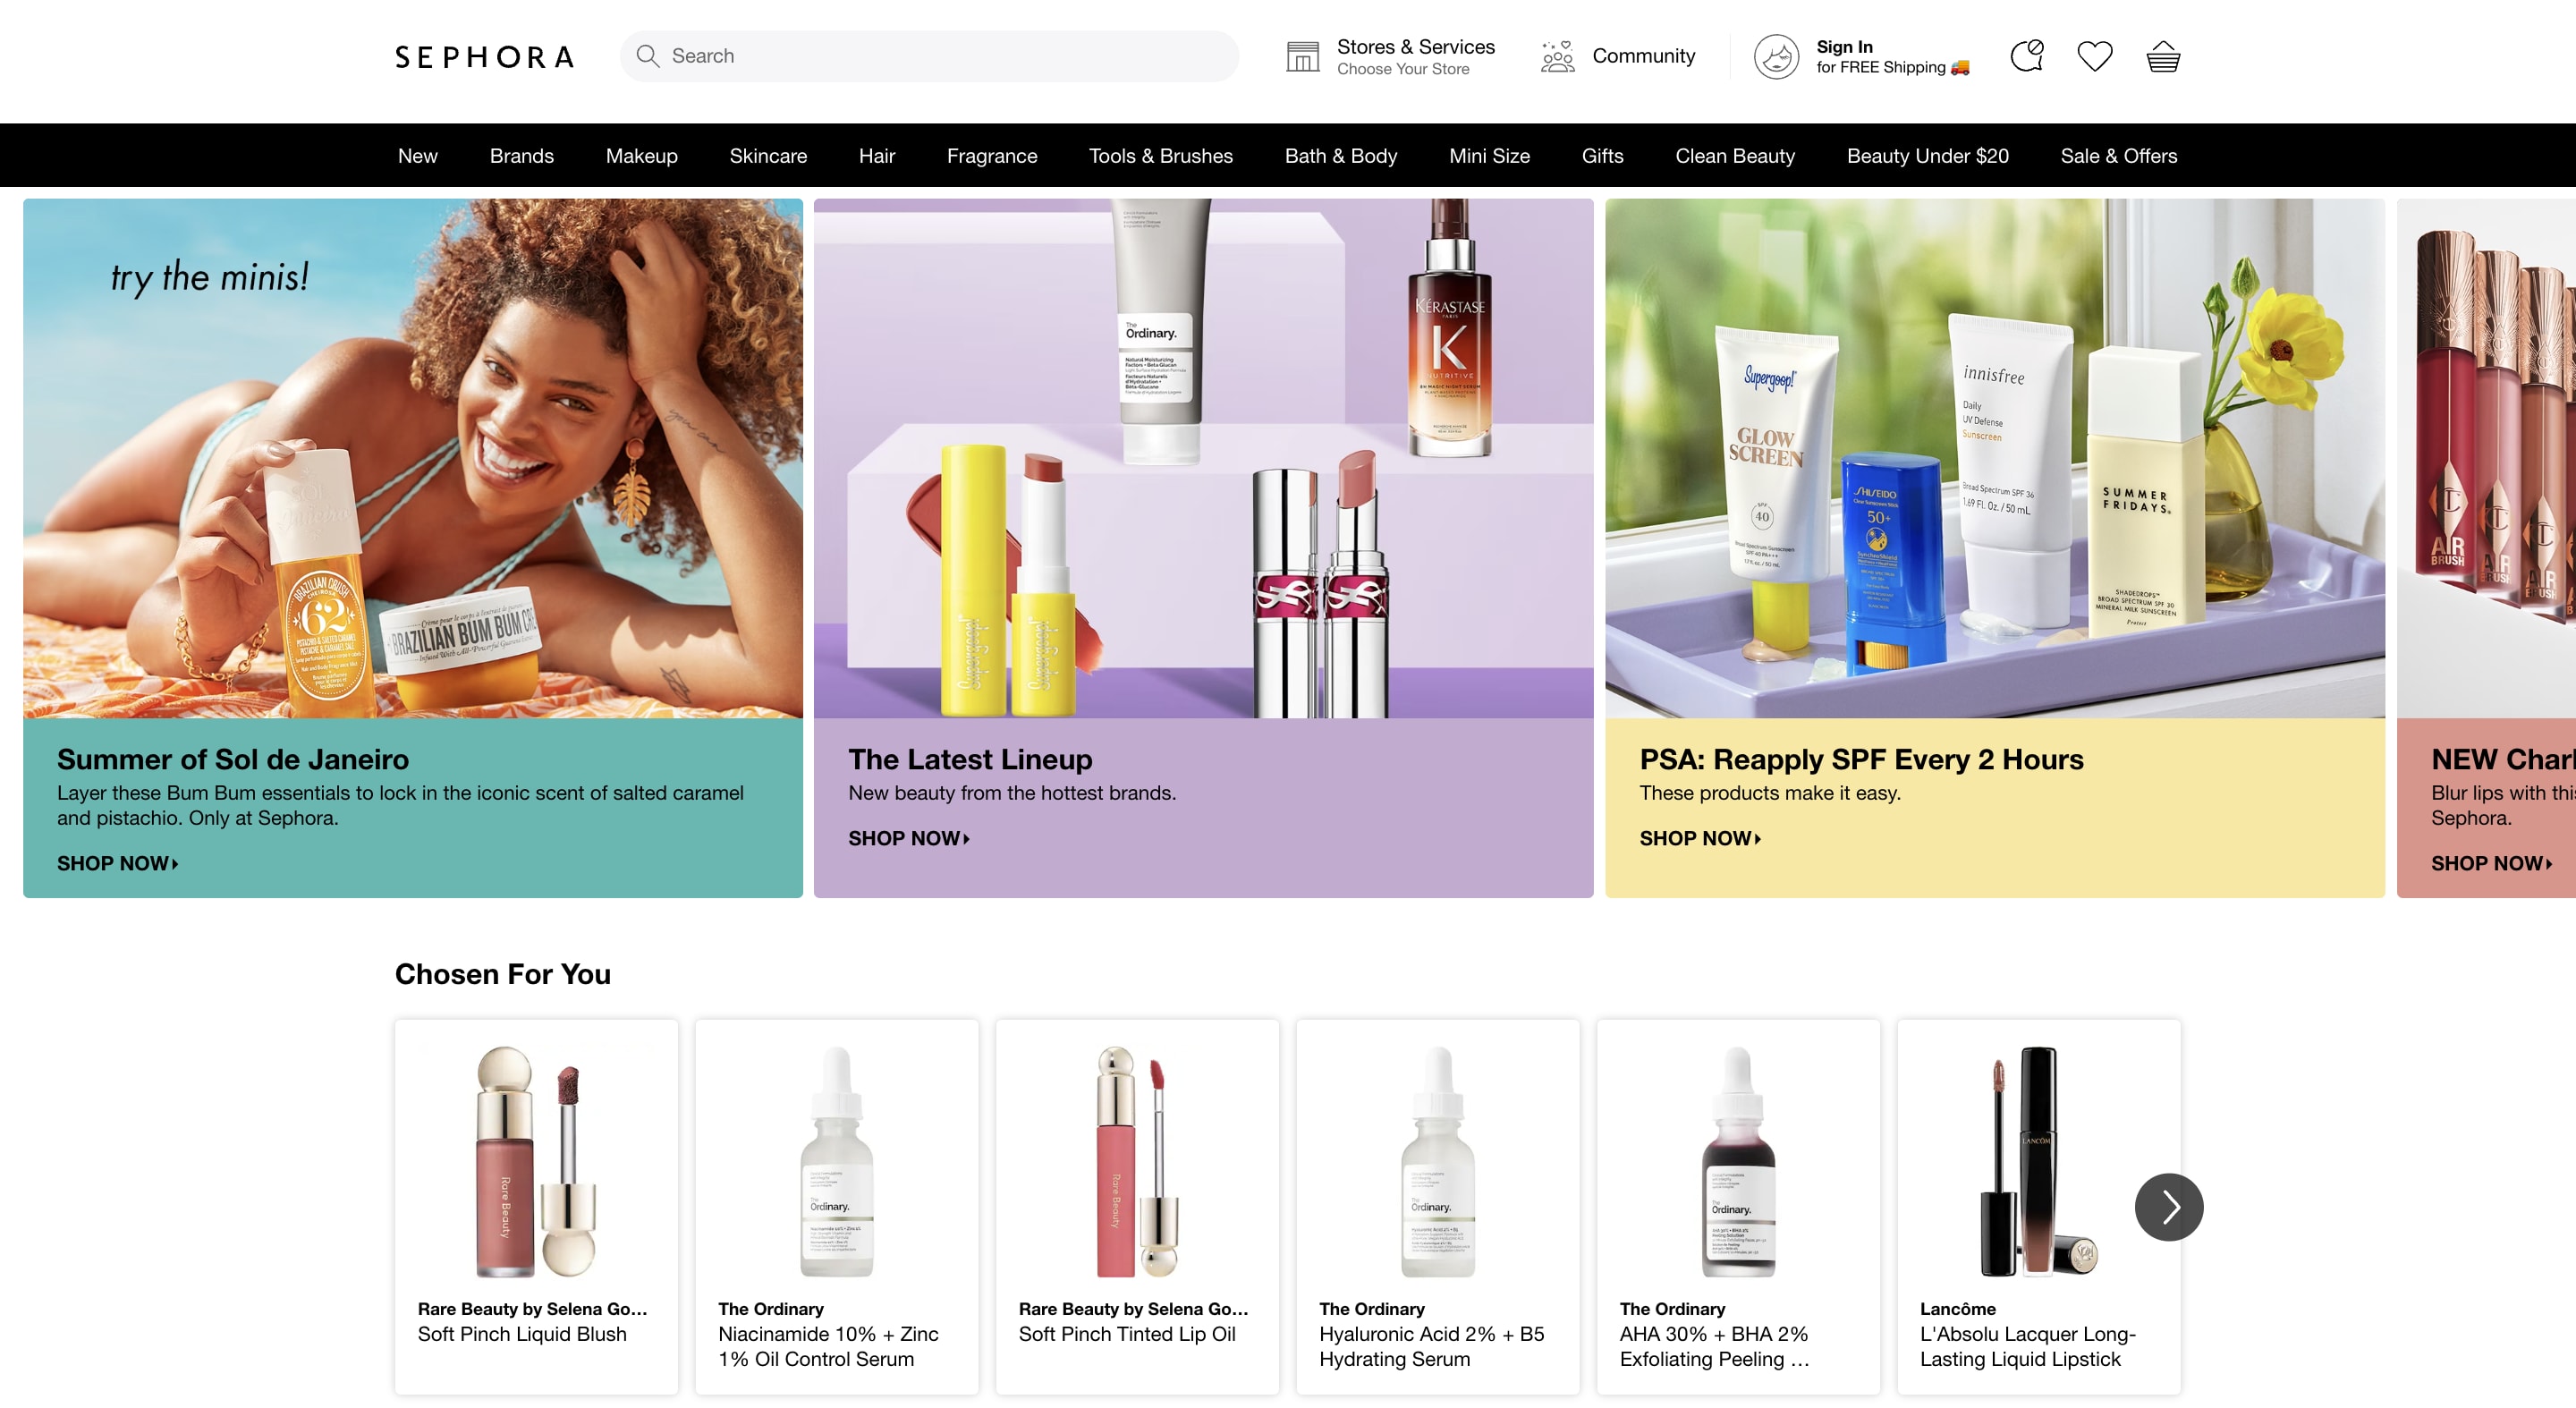 Sephora's website homepage